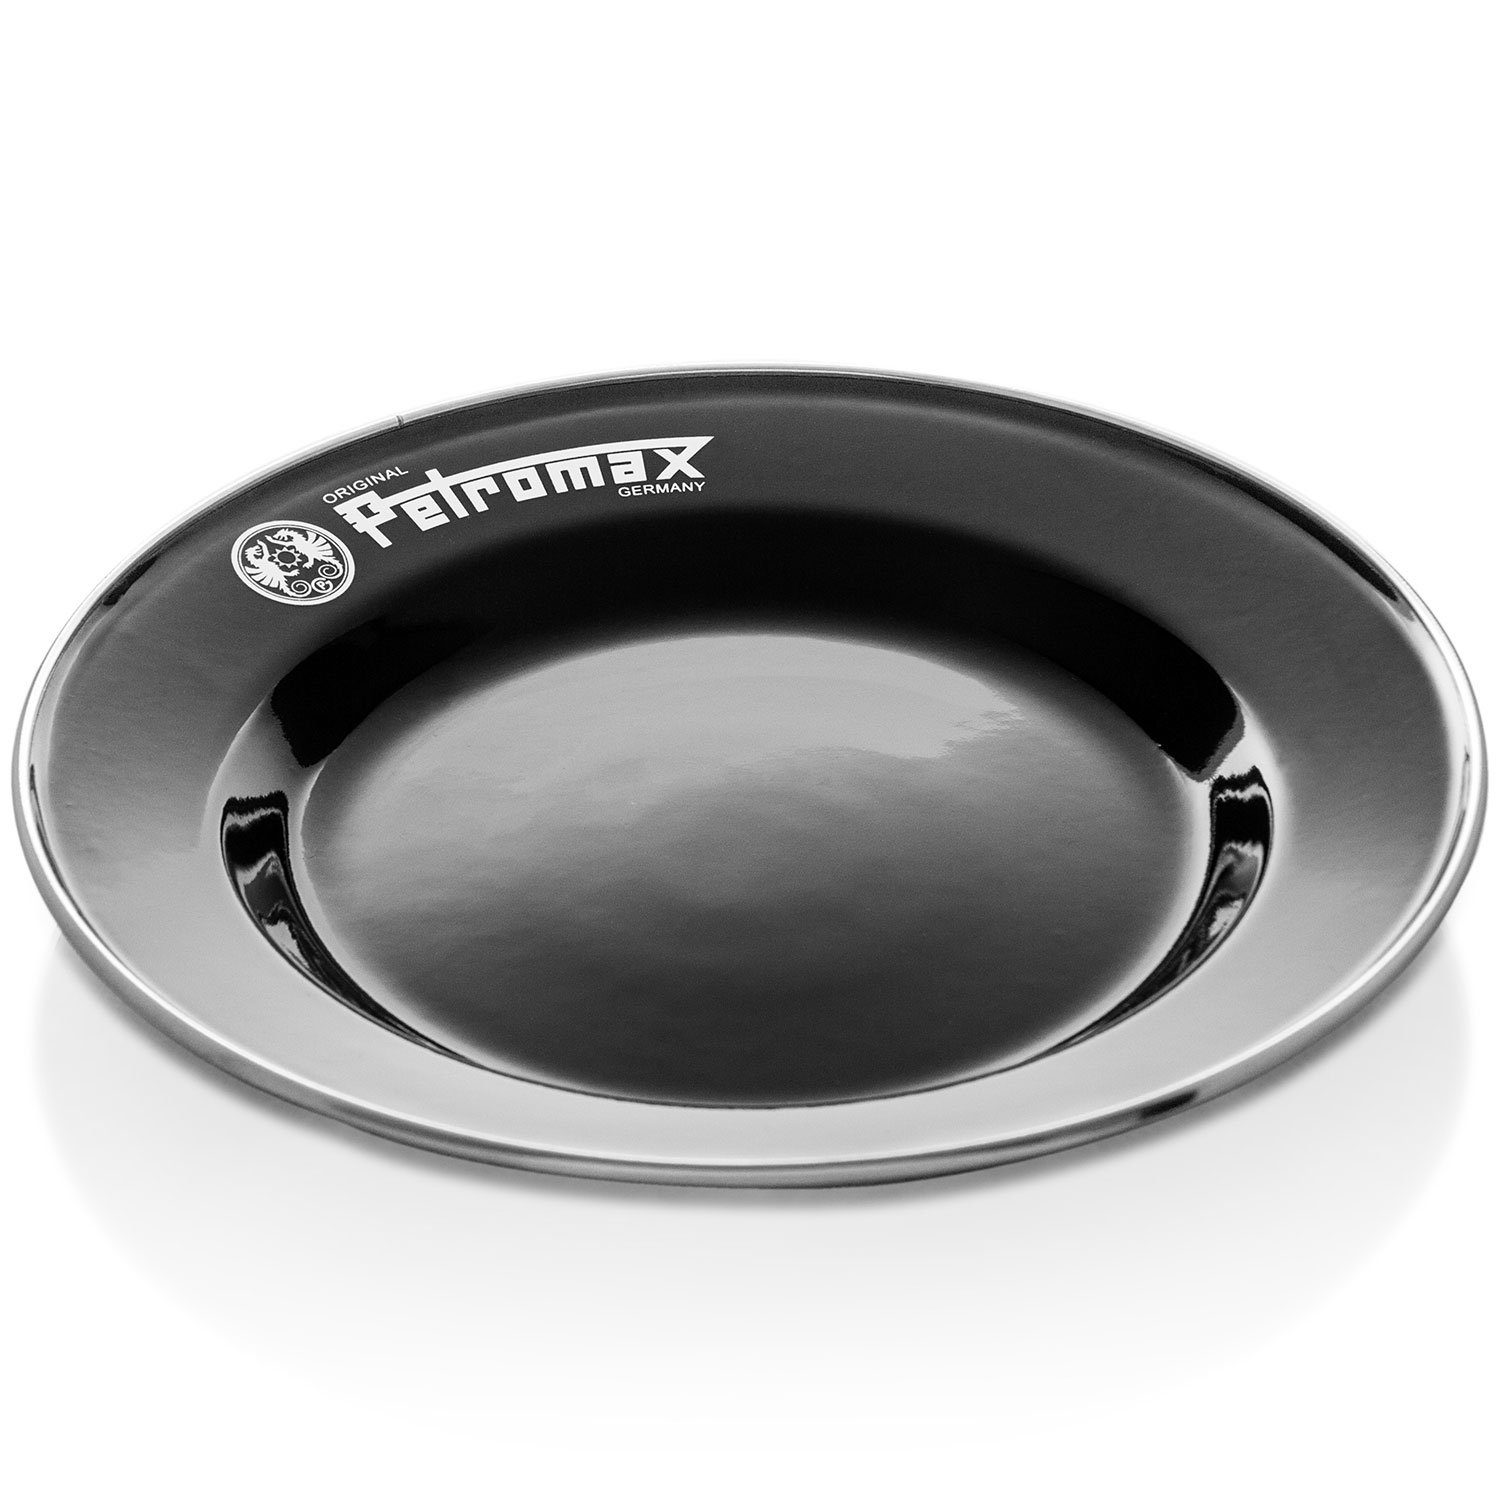 Petromax Perkolator Outdoor Geschirr-Set Perkolator+Becher+Schüssel+Teller schwarz, teilig in Vorteils-Set 7